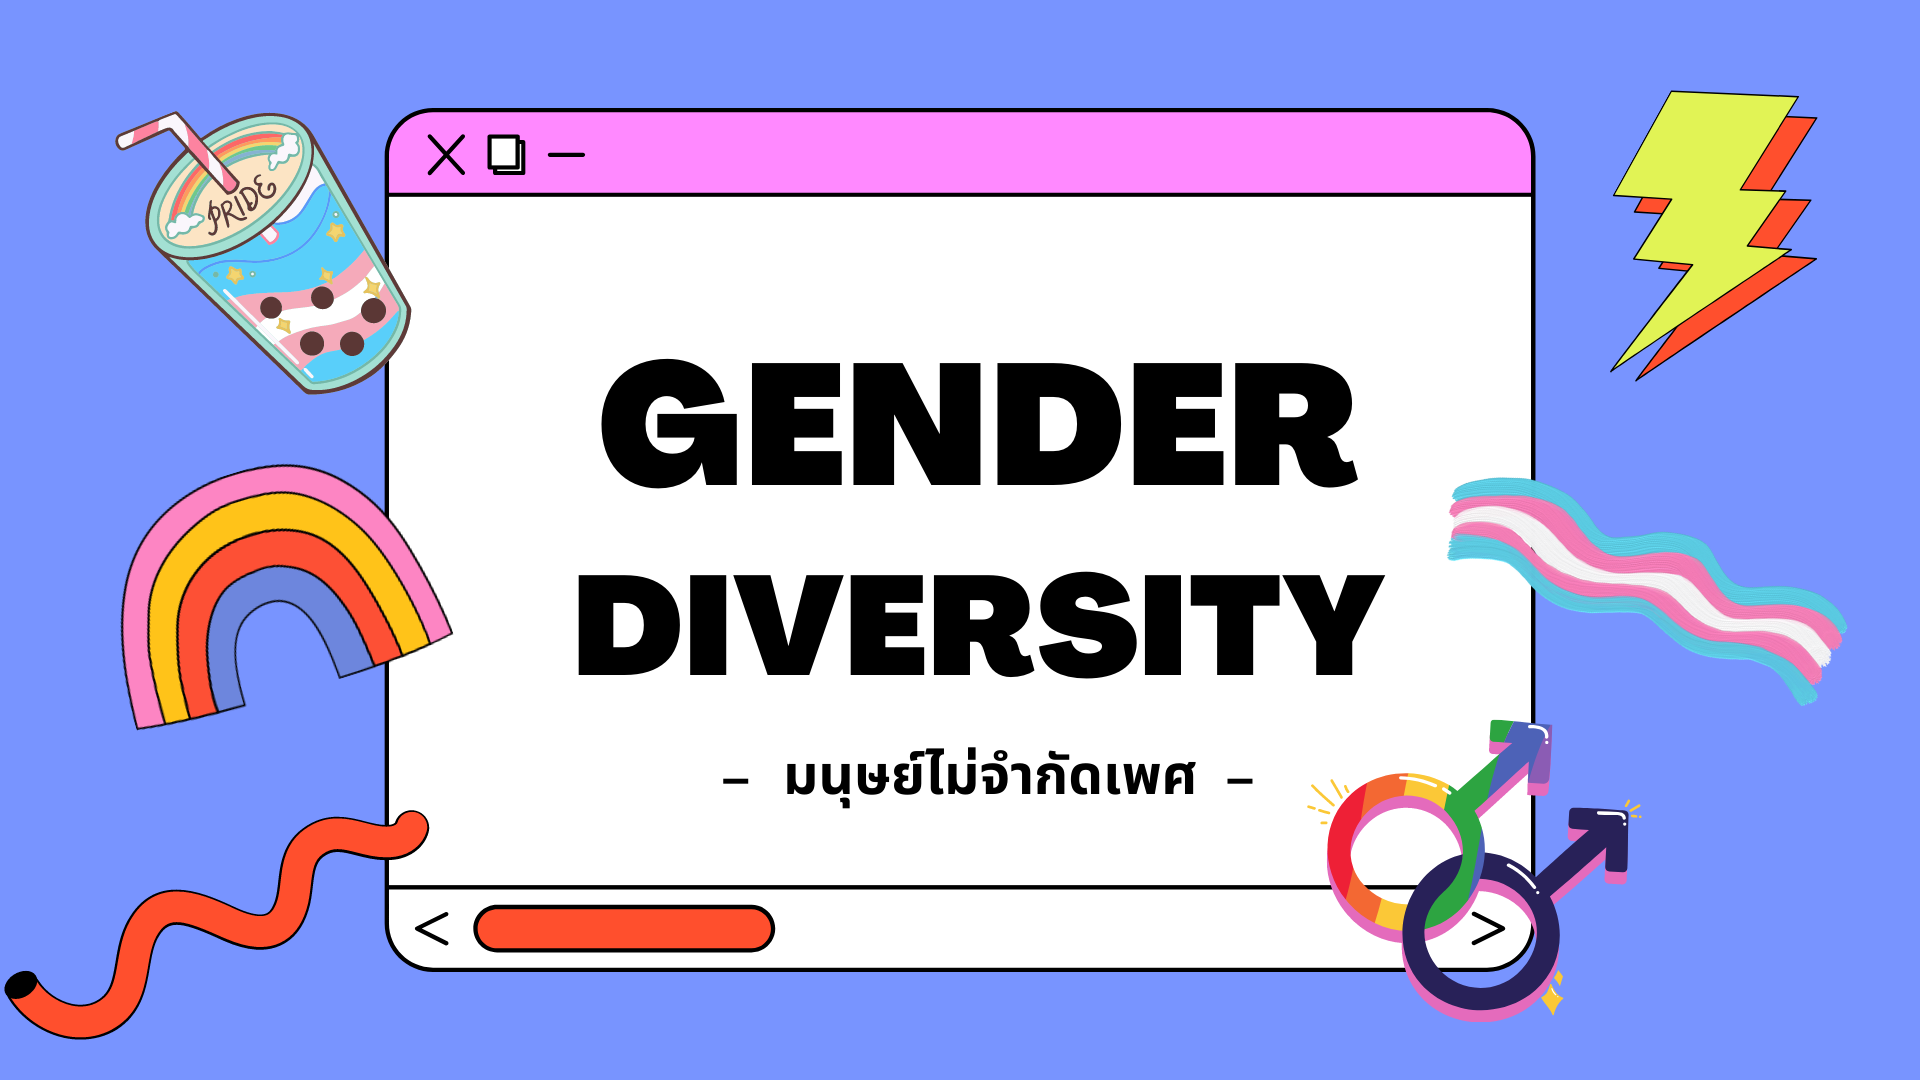 ภาพประกอบไอเดีย Gender Diversity "เพราะมนุษย์ไม่จำกัดเพศ"